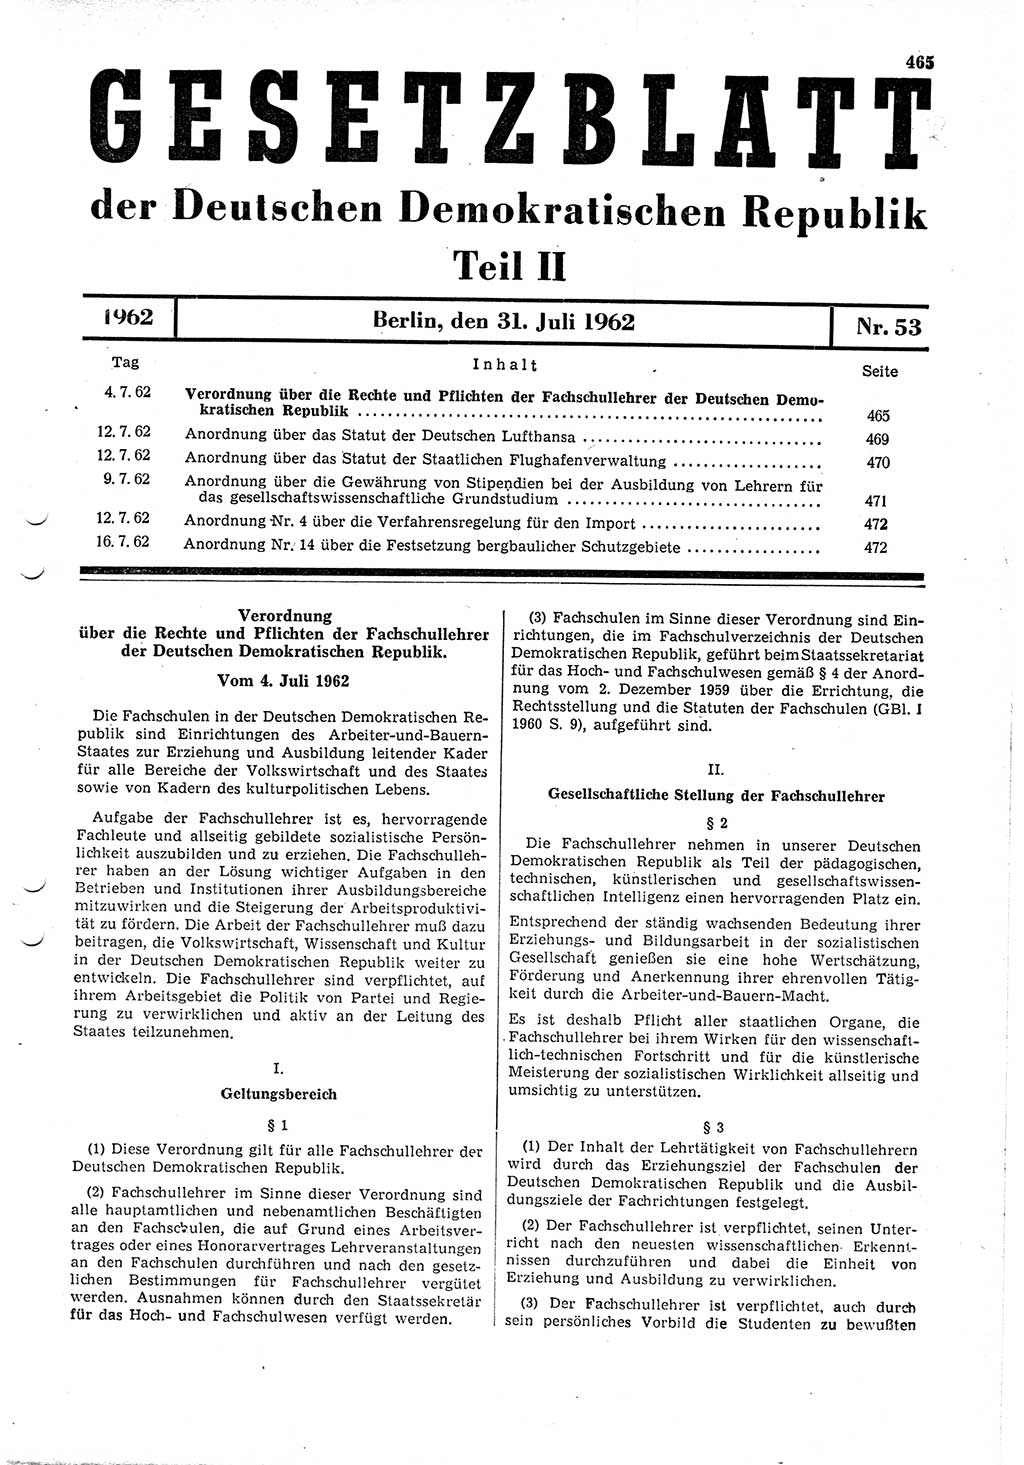 Gesetzblatt (GBl.) der Deutschen Demokratischen Republik (DDR) Teil ⅠⅠ 1962, Seite 465 (GBl. DDR ⅠⅠ 1962, S. 465)